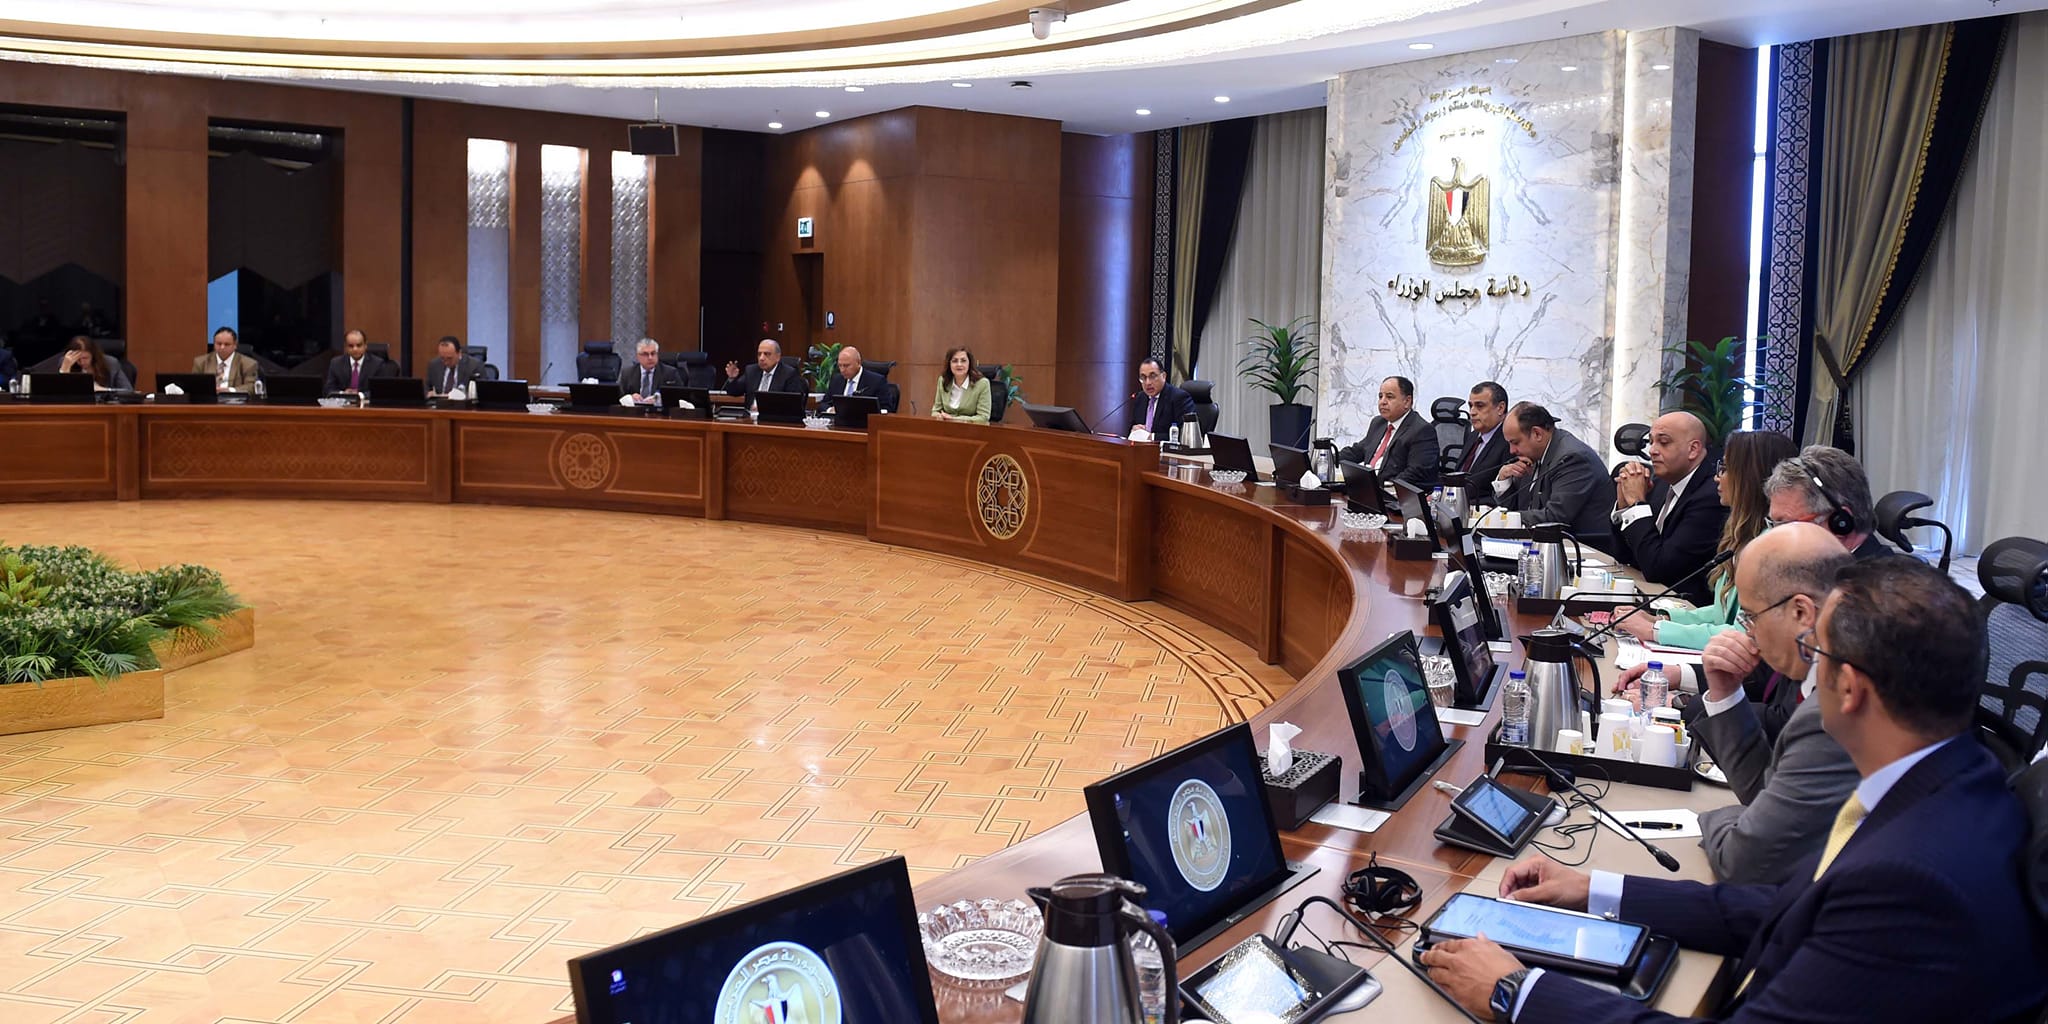 جانب من الاجتماع - الصورة من مجلس الوزراء المصري (5 يونيو 2023)